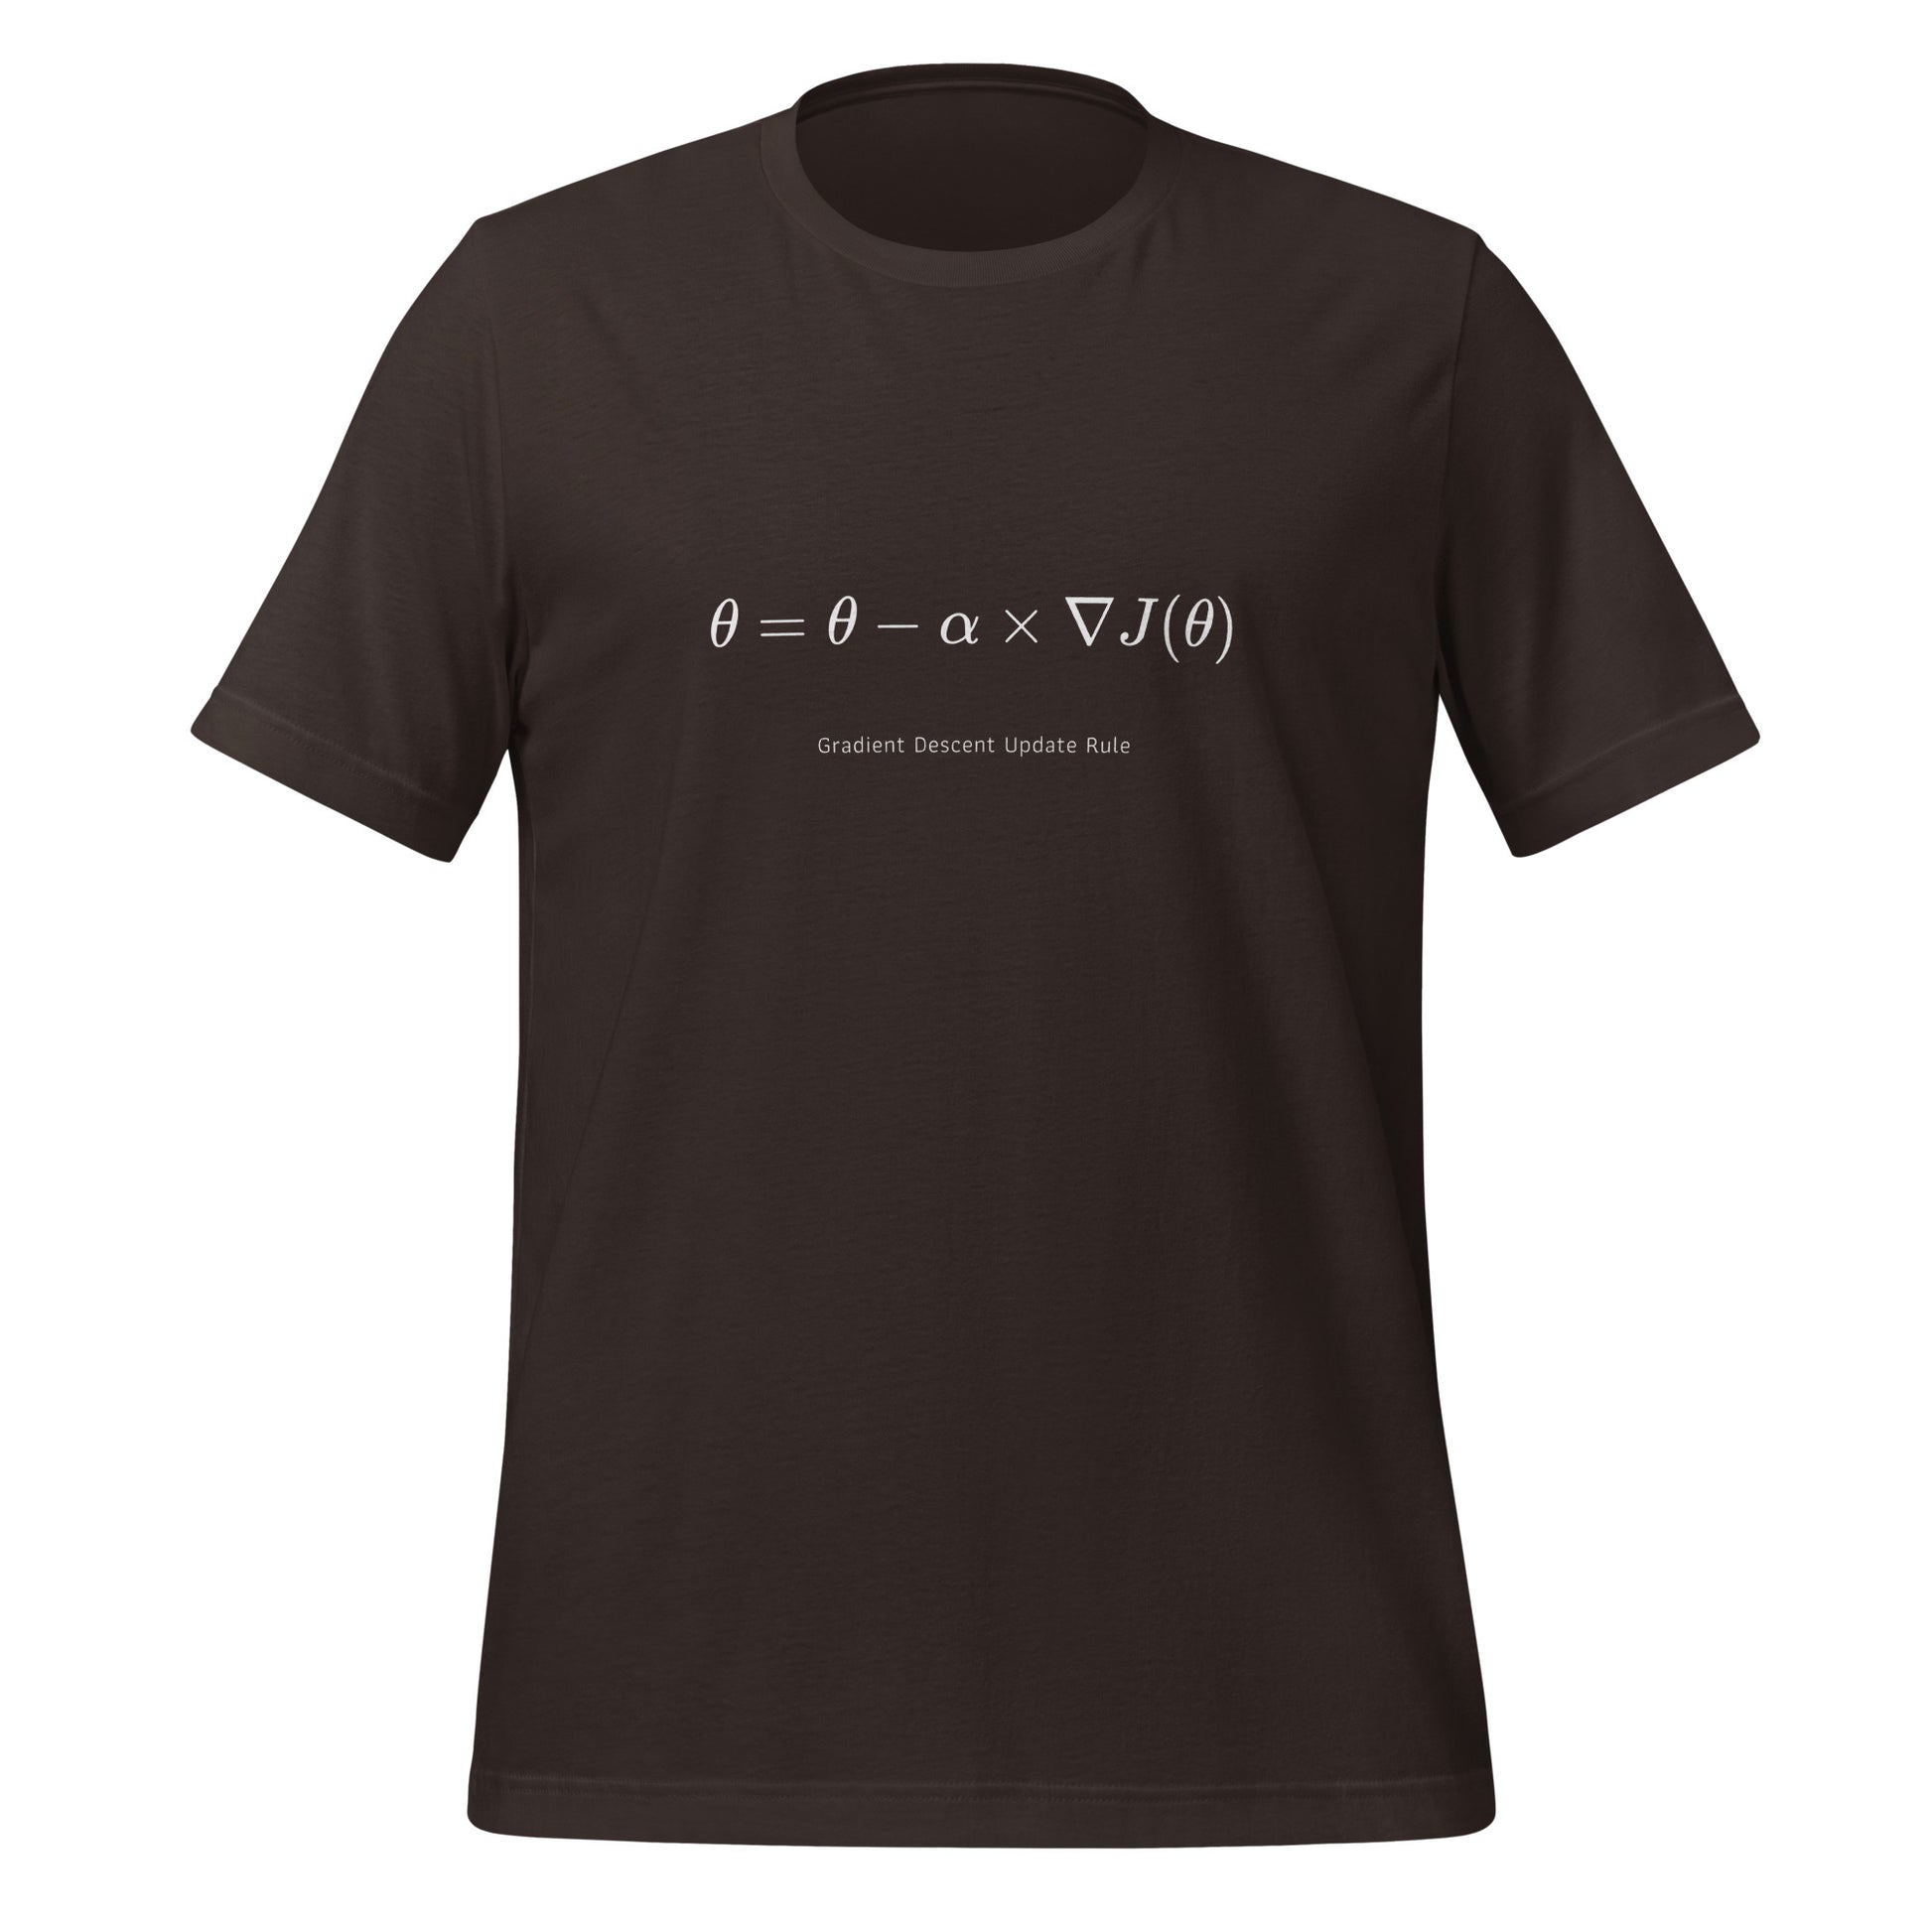 Gradient Descent Update Rule T - Shirt (unisex) - Brown - AI Store